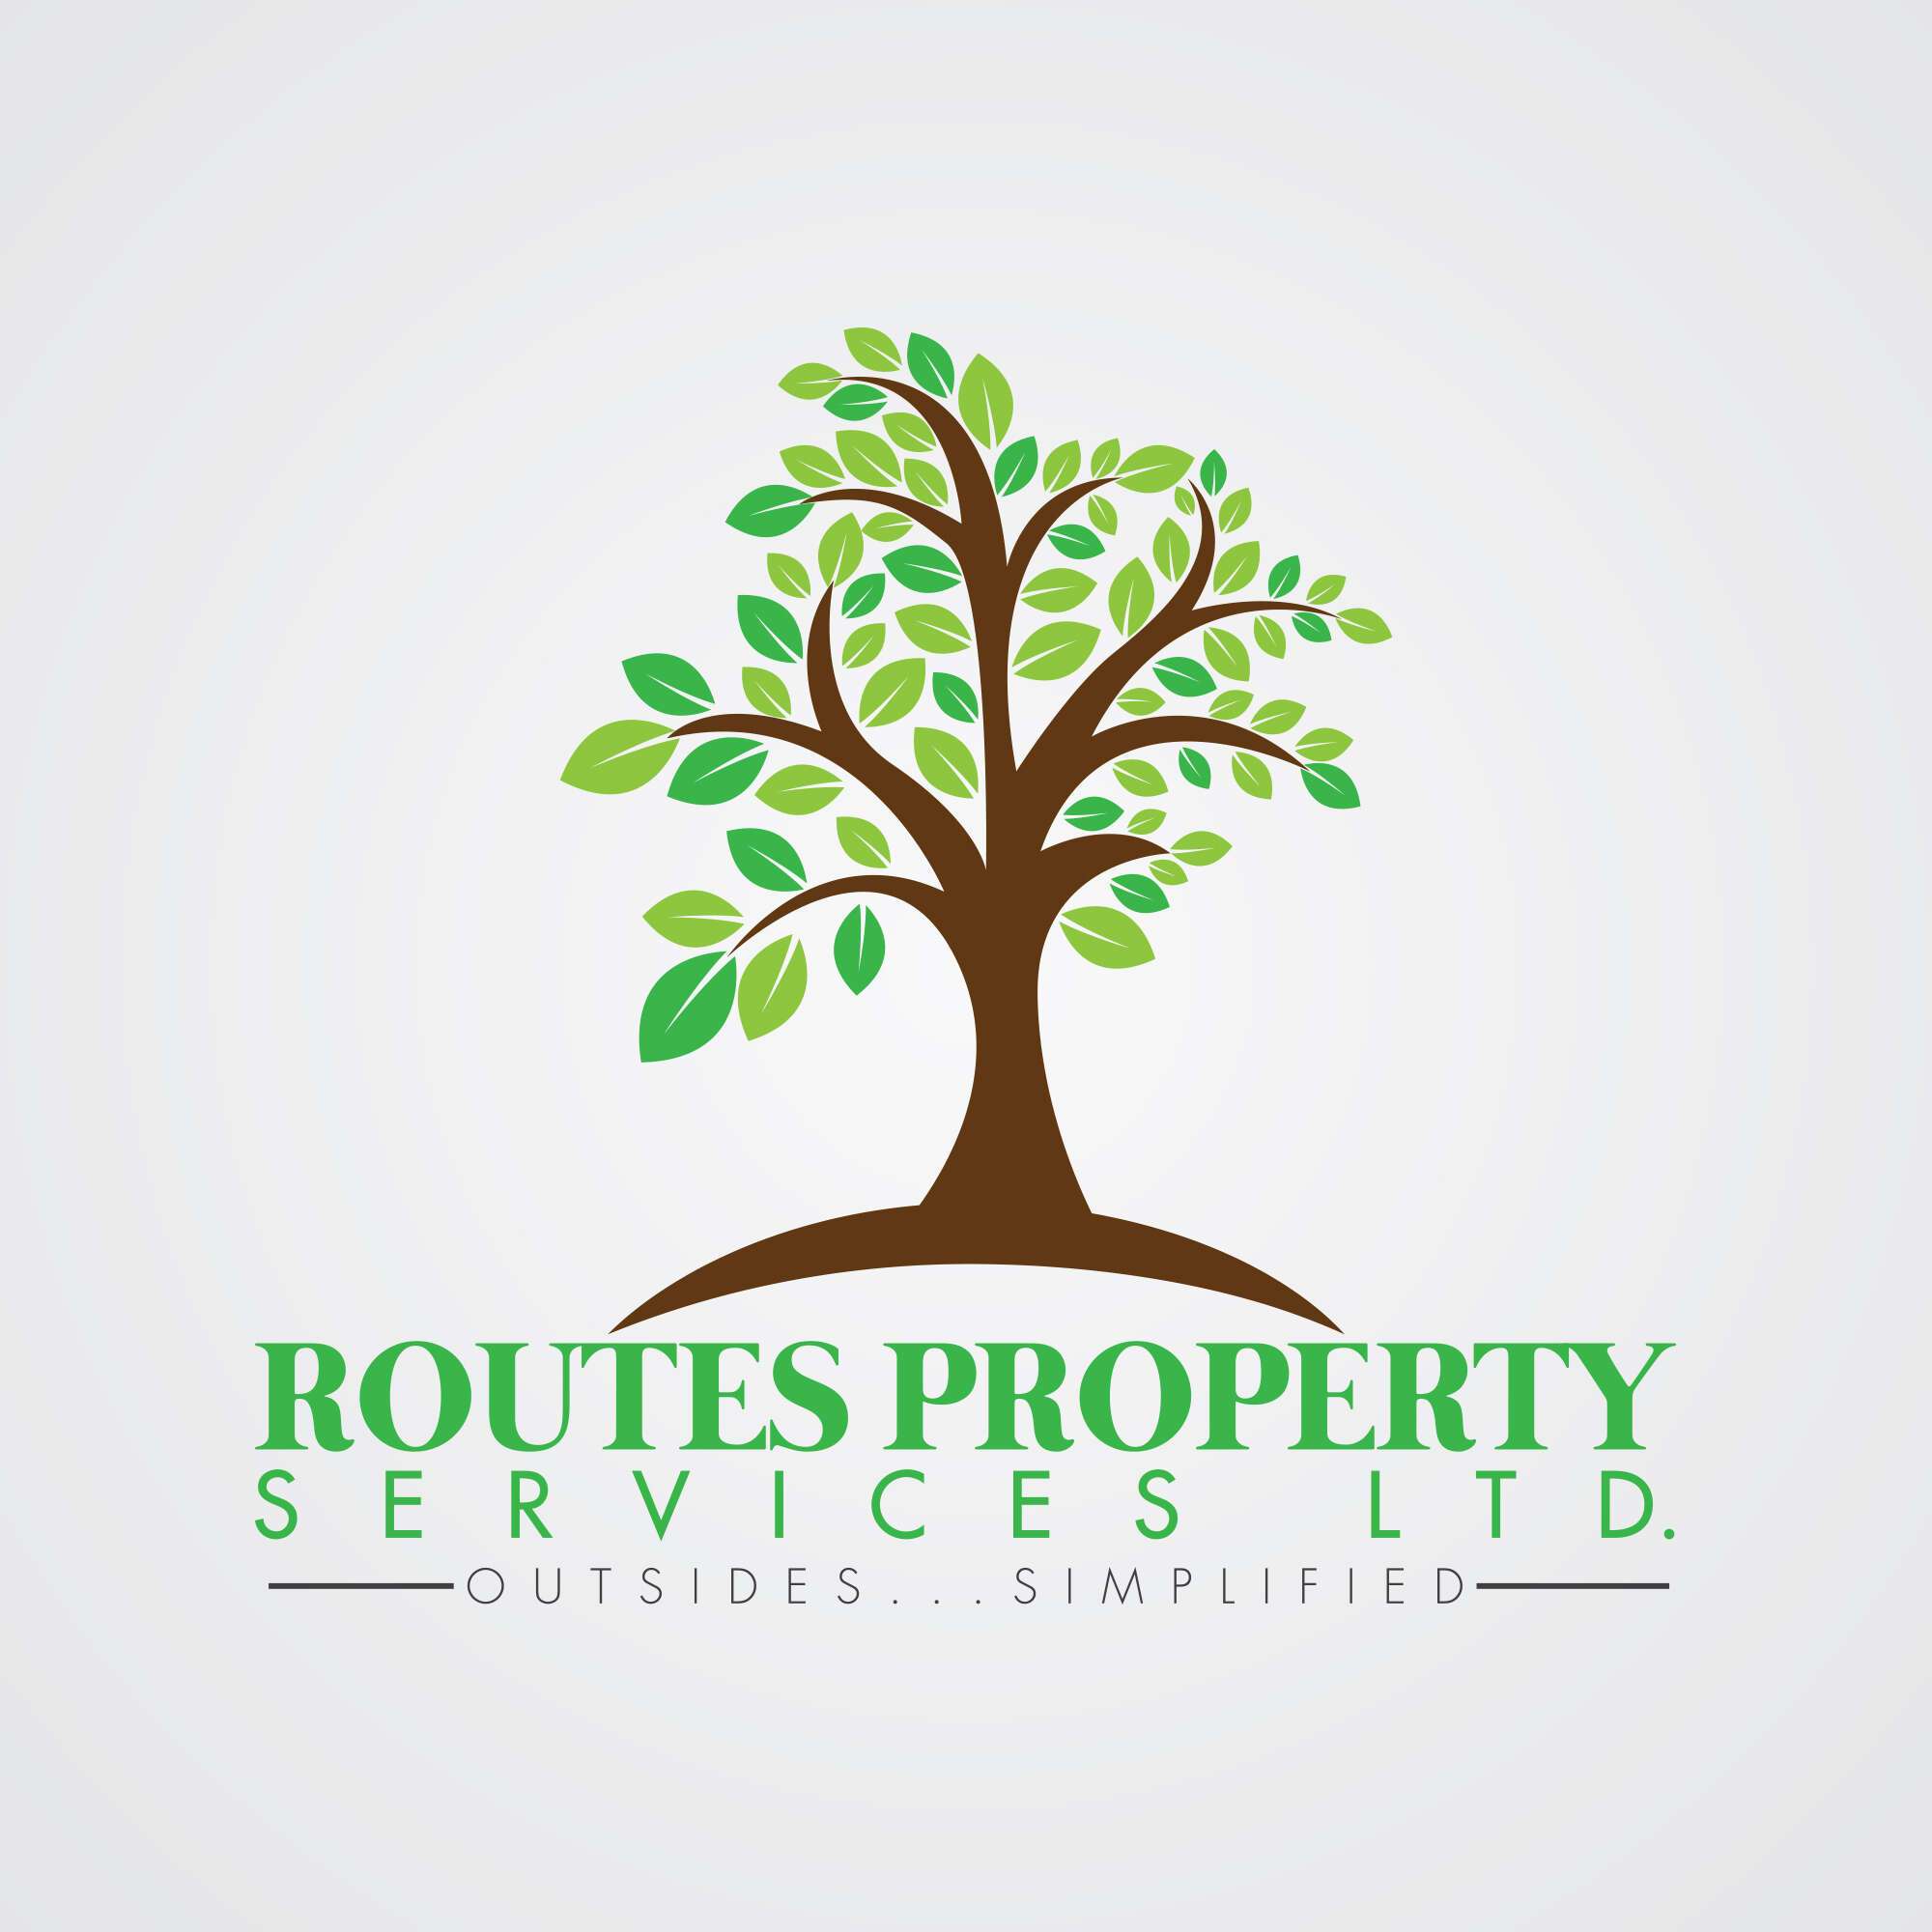 Routes Property Services Ltd.